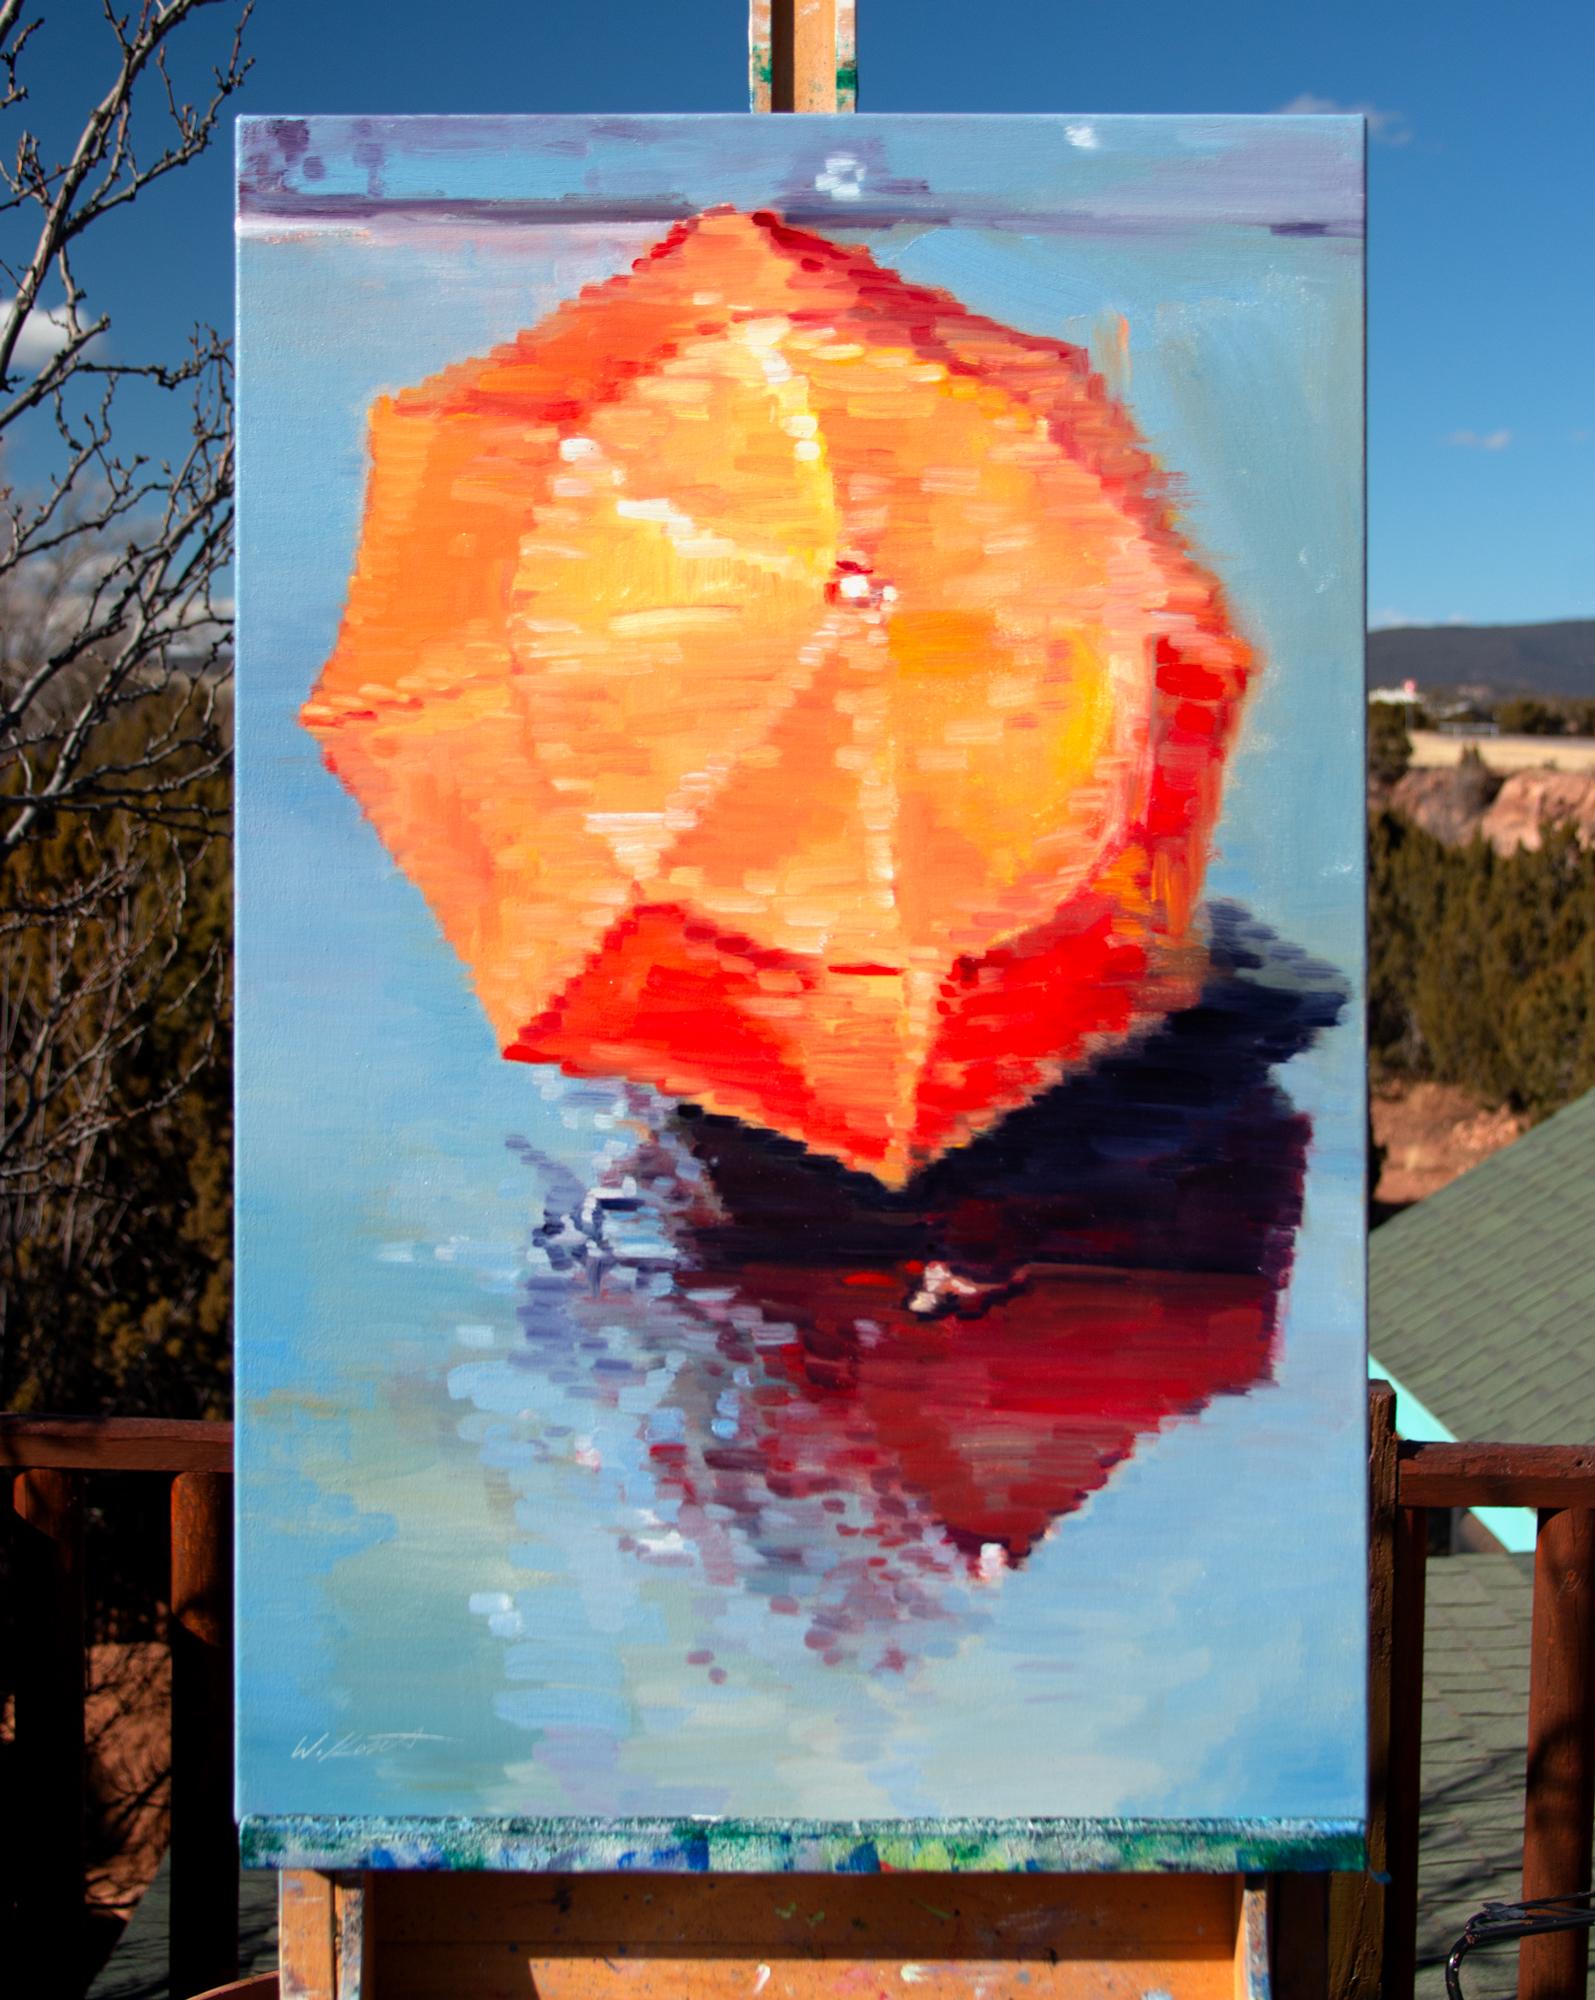 <p>Commentaires de l'artiste<br>L'artiste Warren Keating expose une  peinture animée d'une vue aérienne d'un parapluie orange sous la pluie. Il puise son inspiration en assistant à la scène depuis le balcon de son hôtel à Paris. En utilisant sa